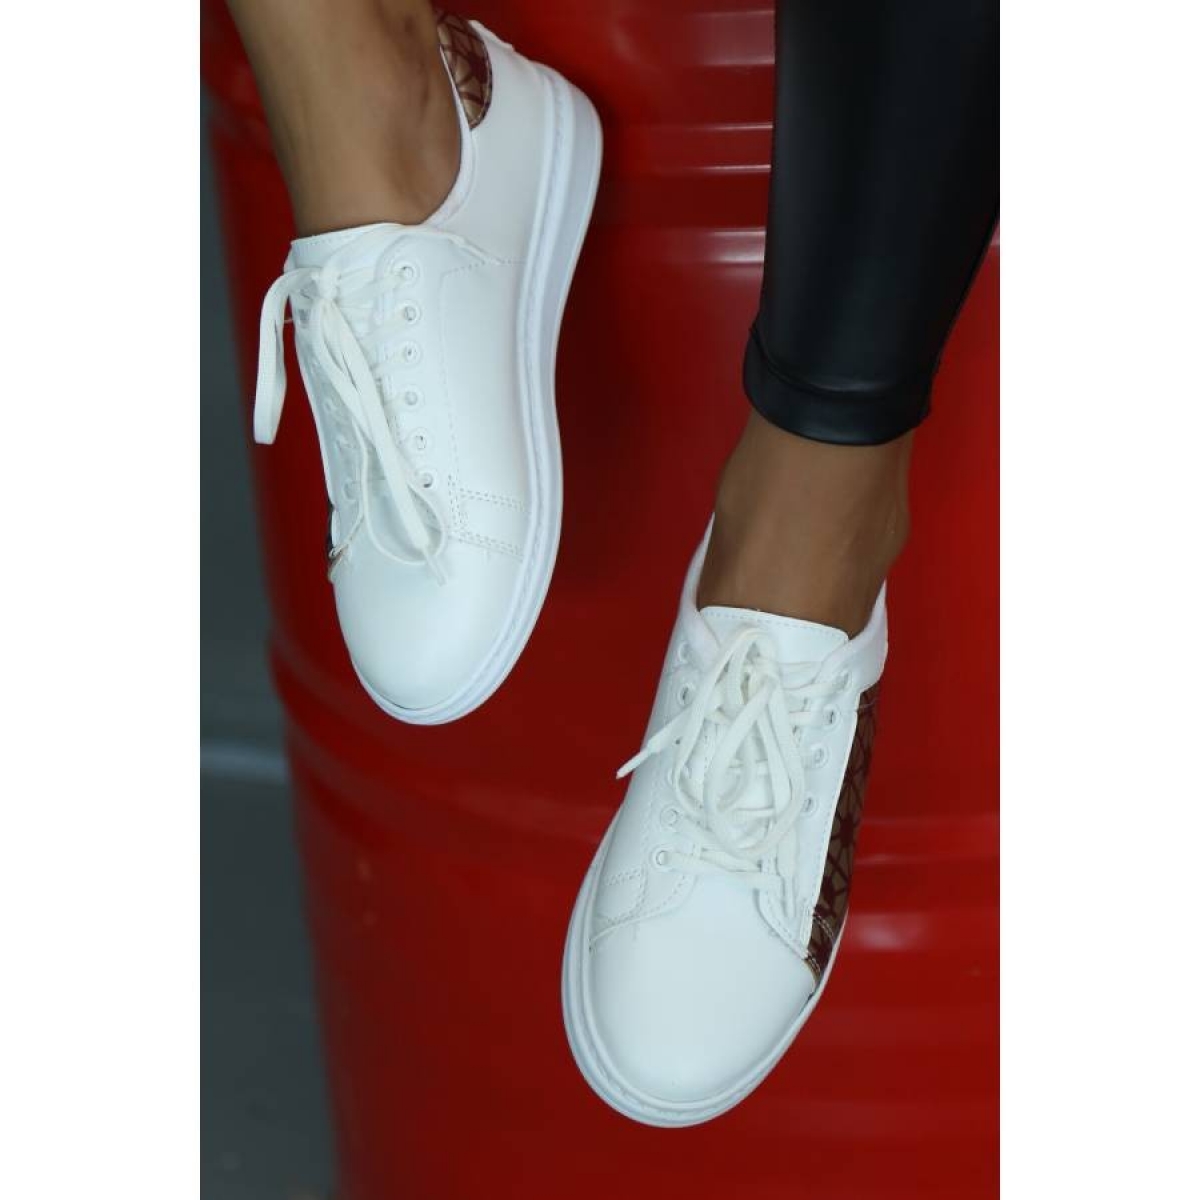 Flo Beyaz-Bordo Kadın Spor Ayakkabı 5013-20-101001. 3